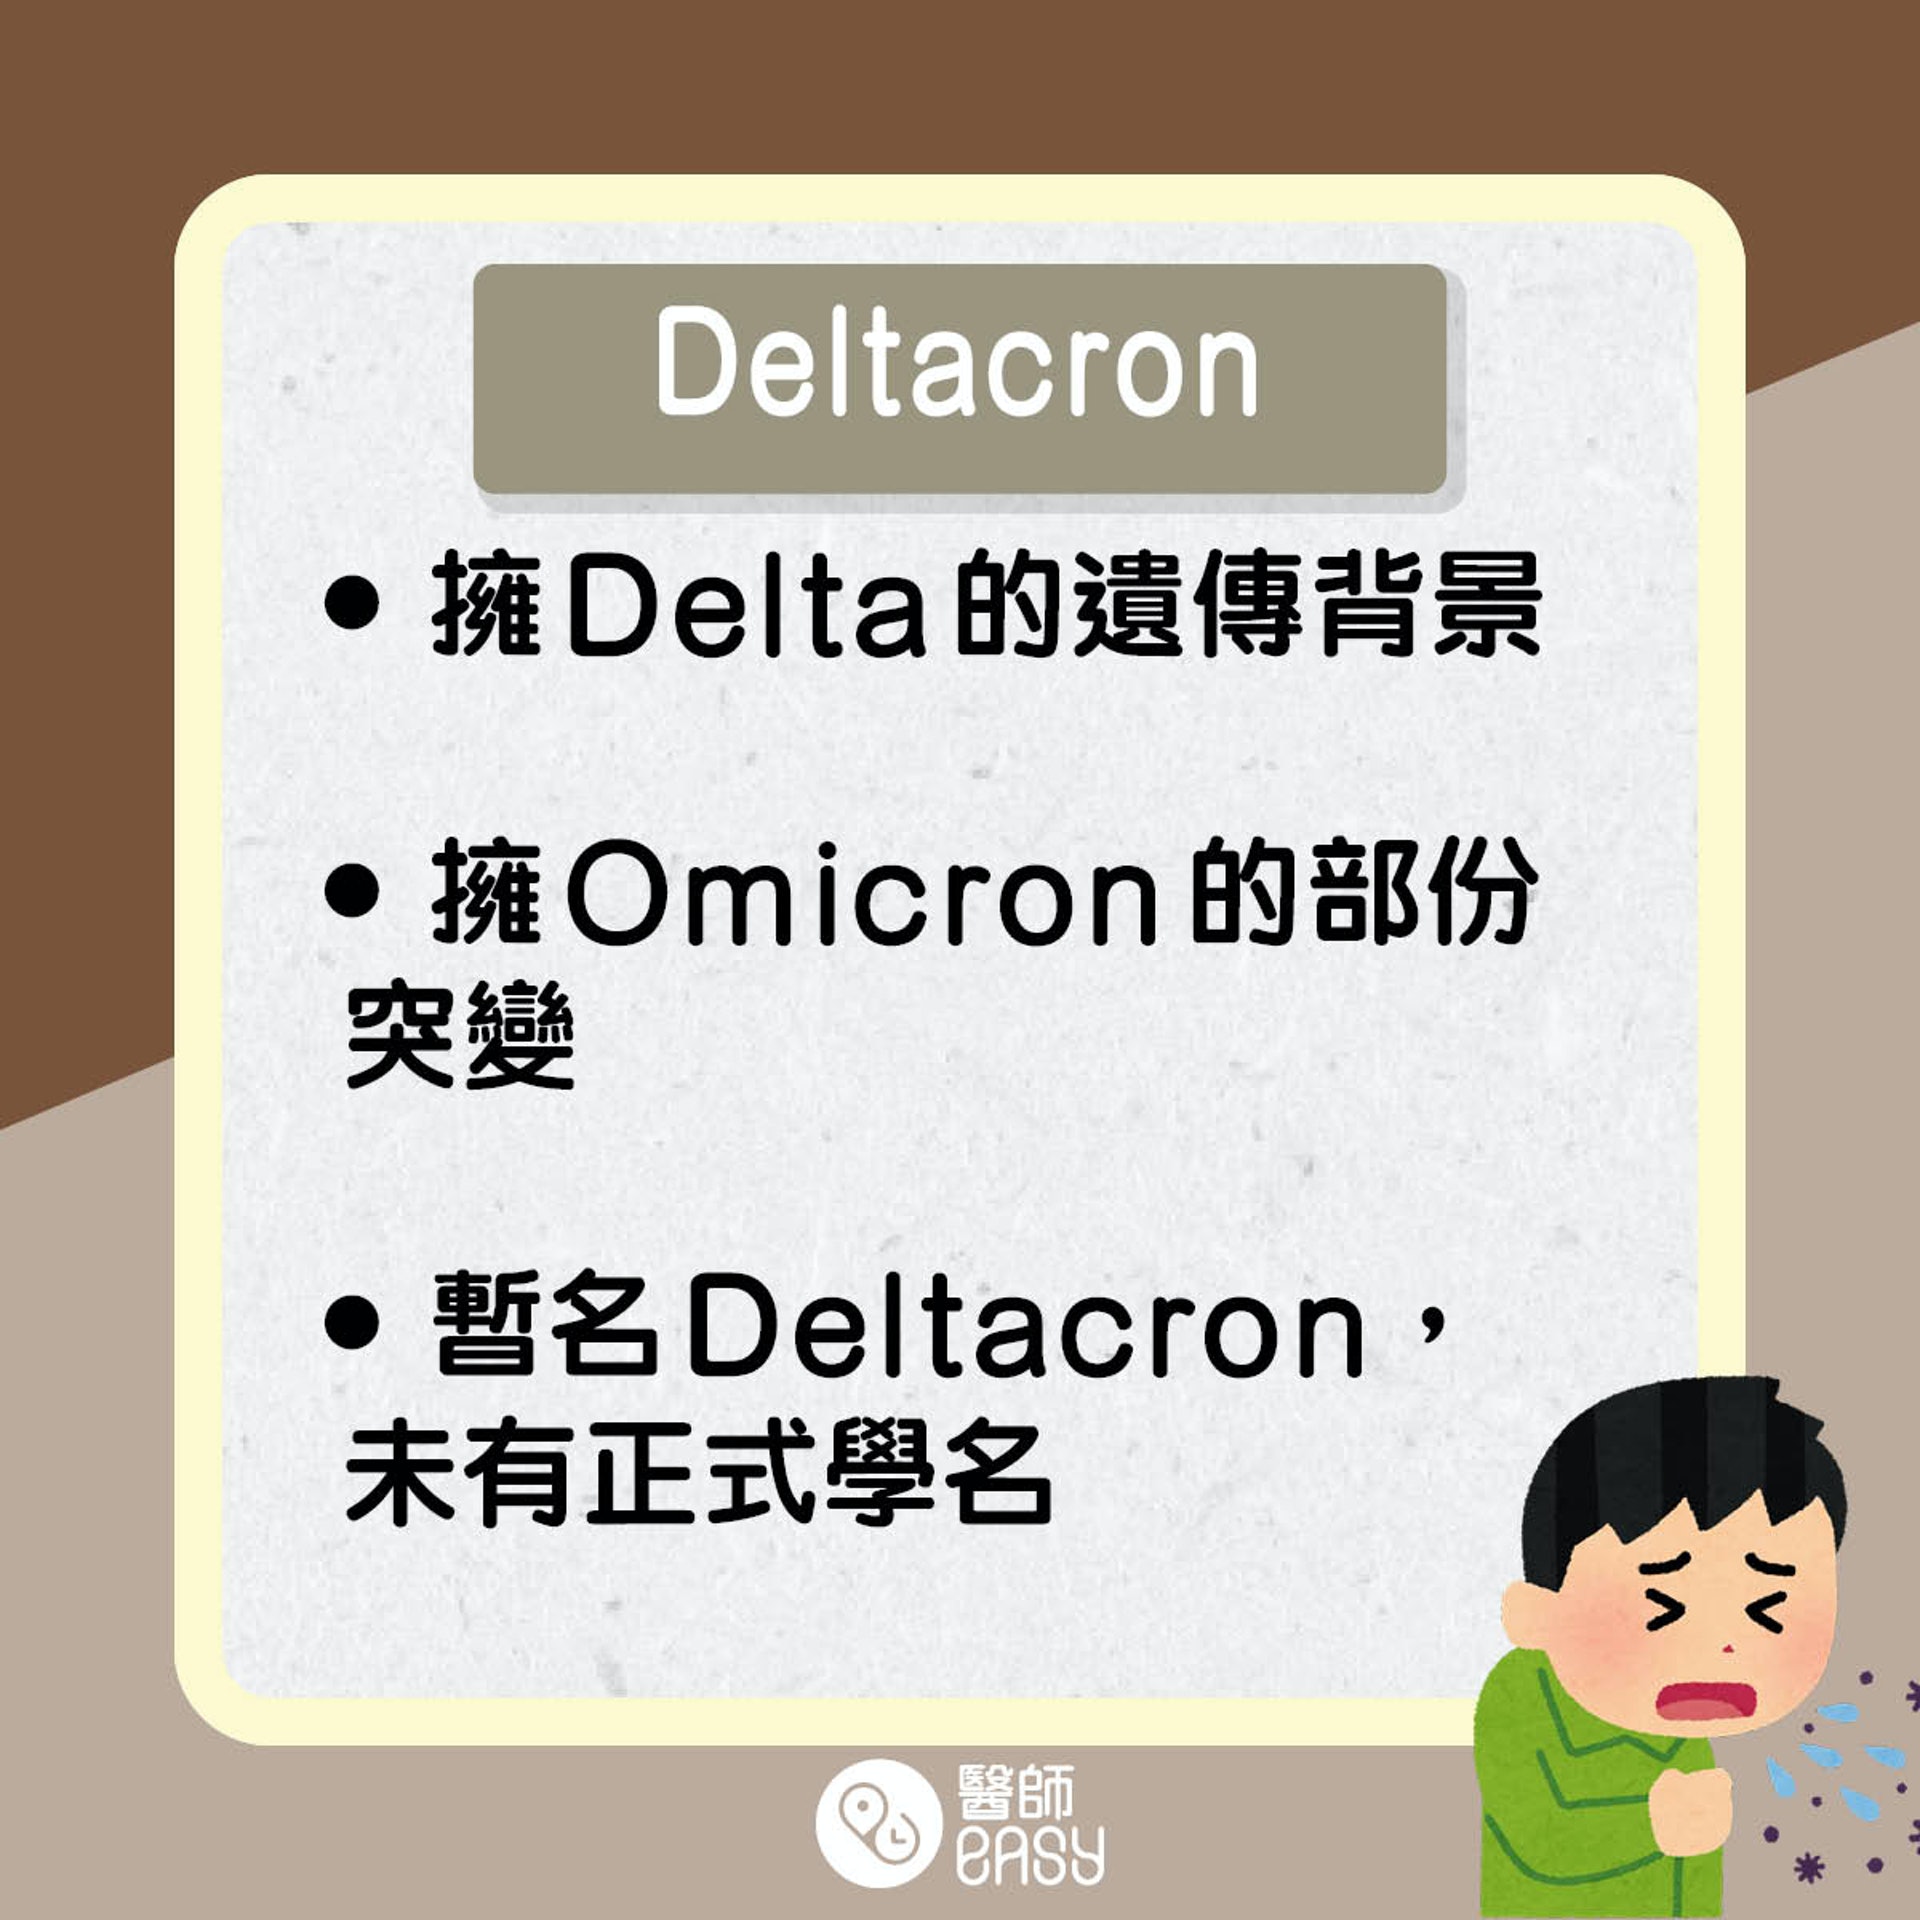 Deltacron知多啲。(醫師Easy製圖)